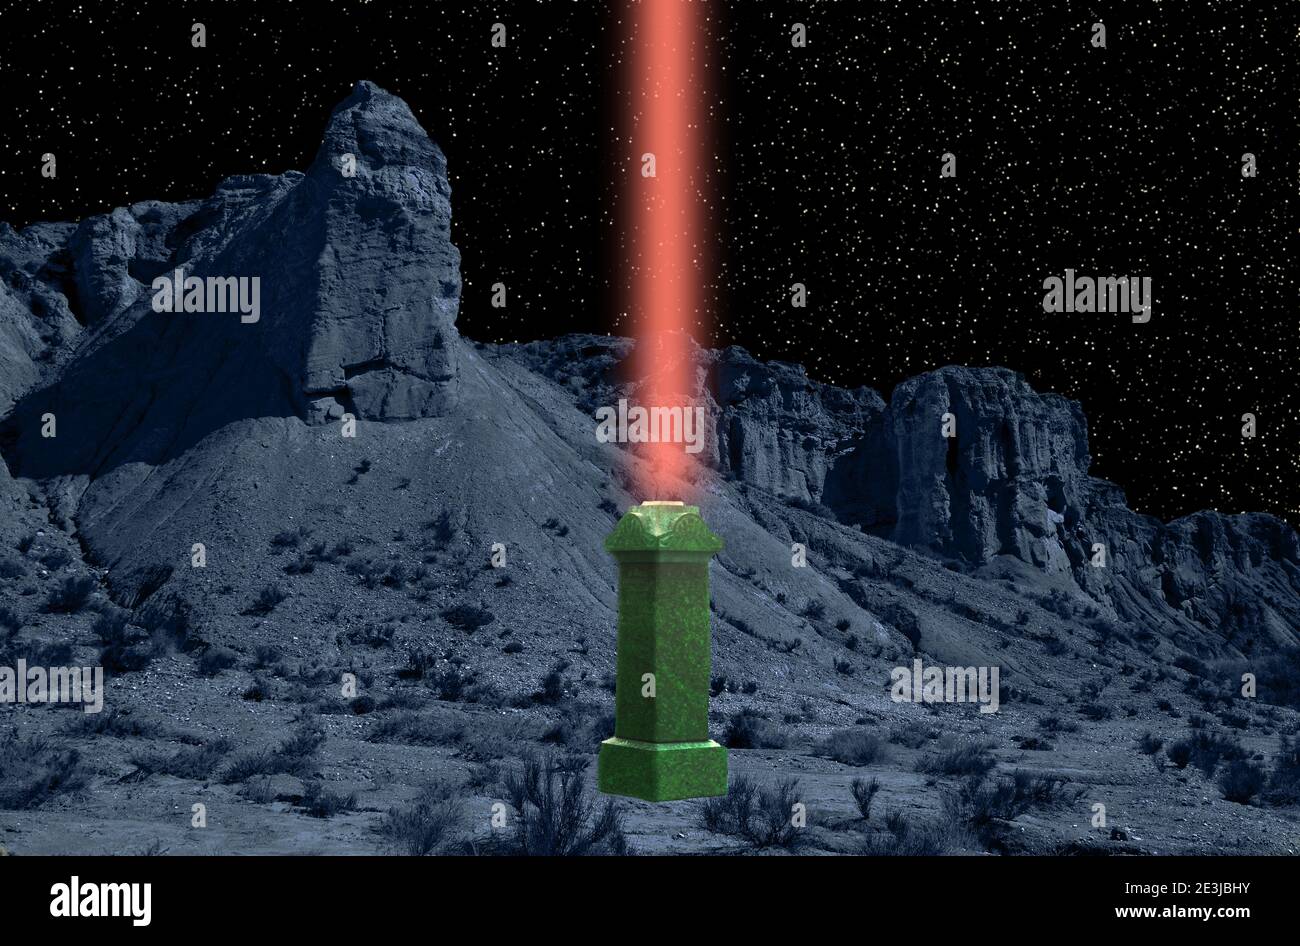 Qui è mostrata un'immagine di fantasia di un obelisco alieno che crea un laser beacon. Il terrano proviene dal deserto di Tabernas in Spagna. Foto Stock